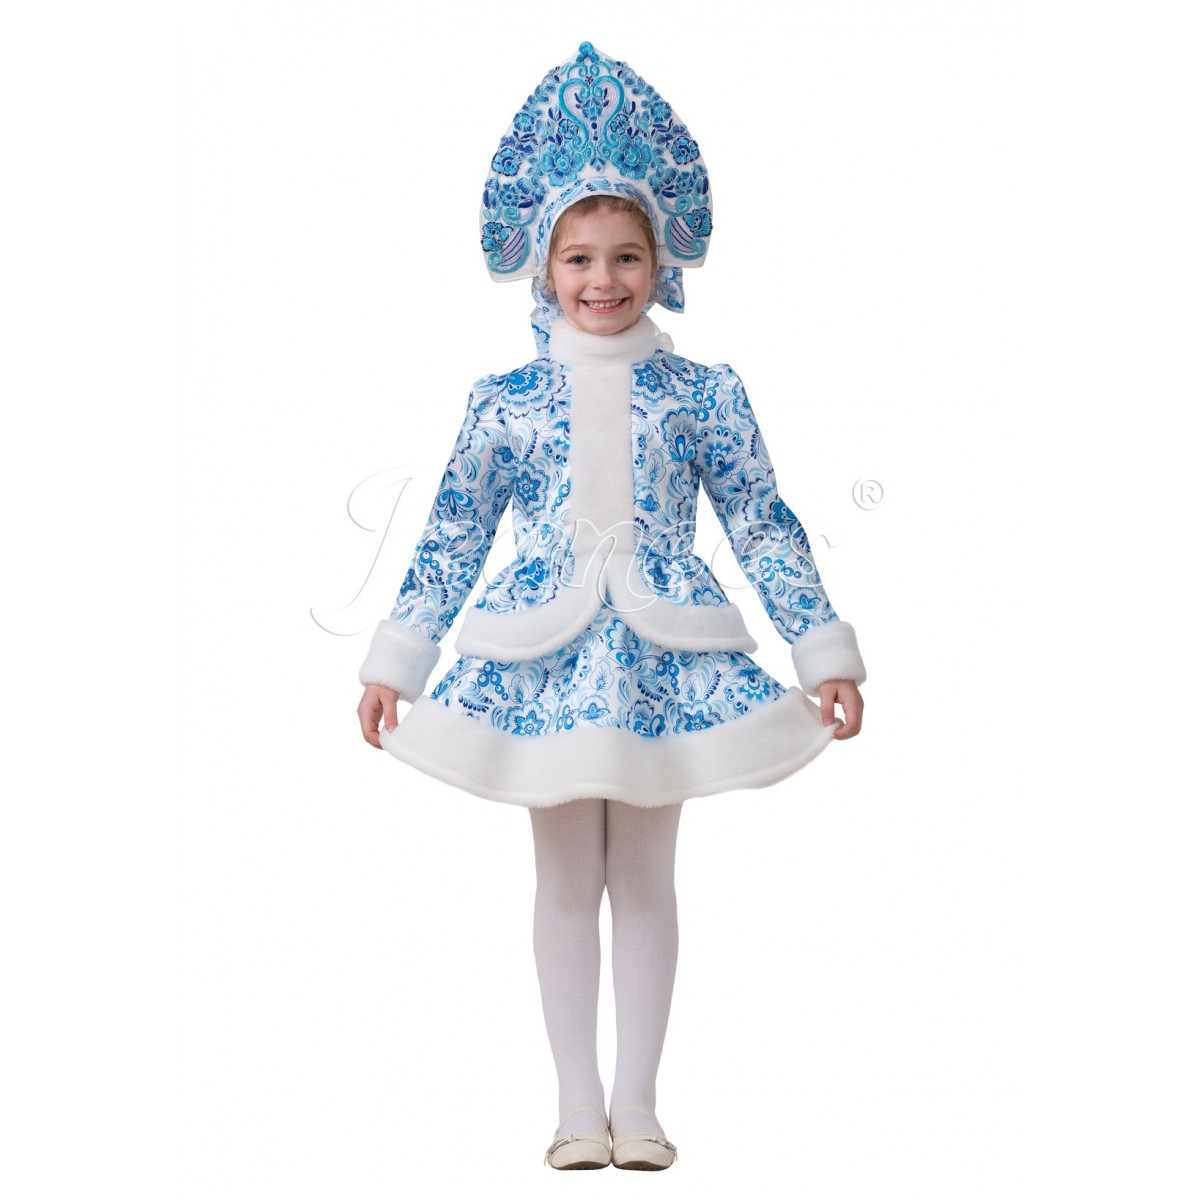 Купить костюм Снегурочки для взрослых и девочек в Москве в интернет-магазине sapsanmsk.ru